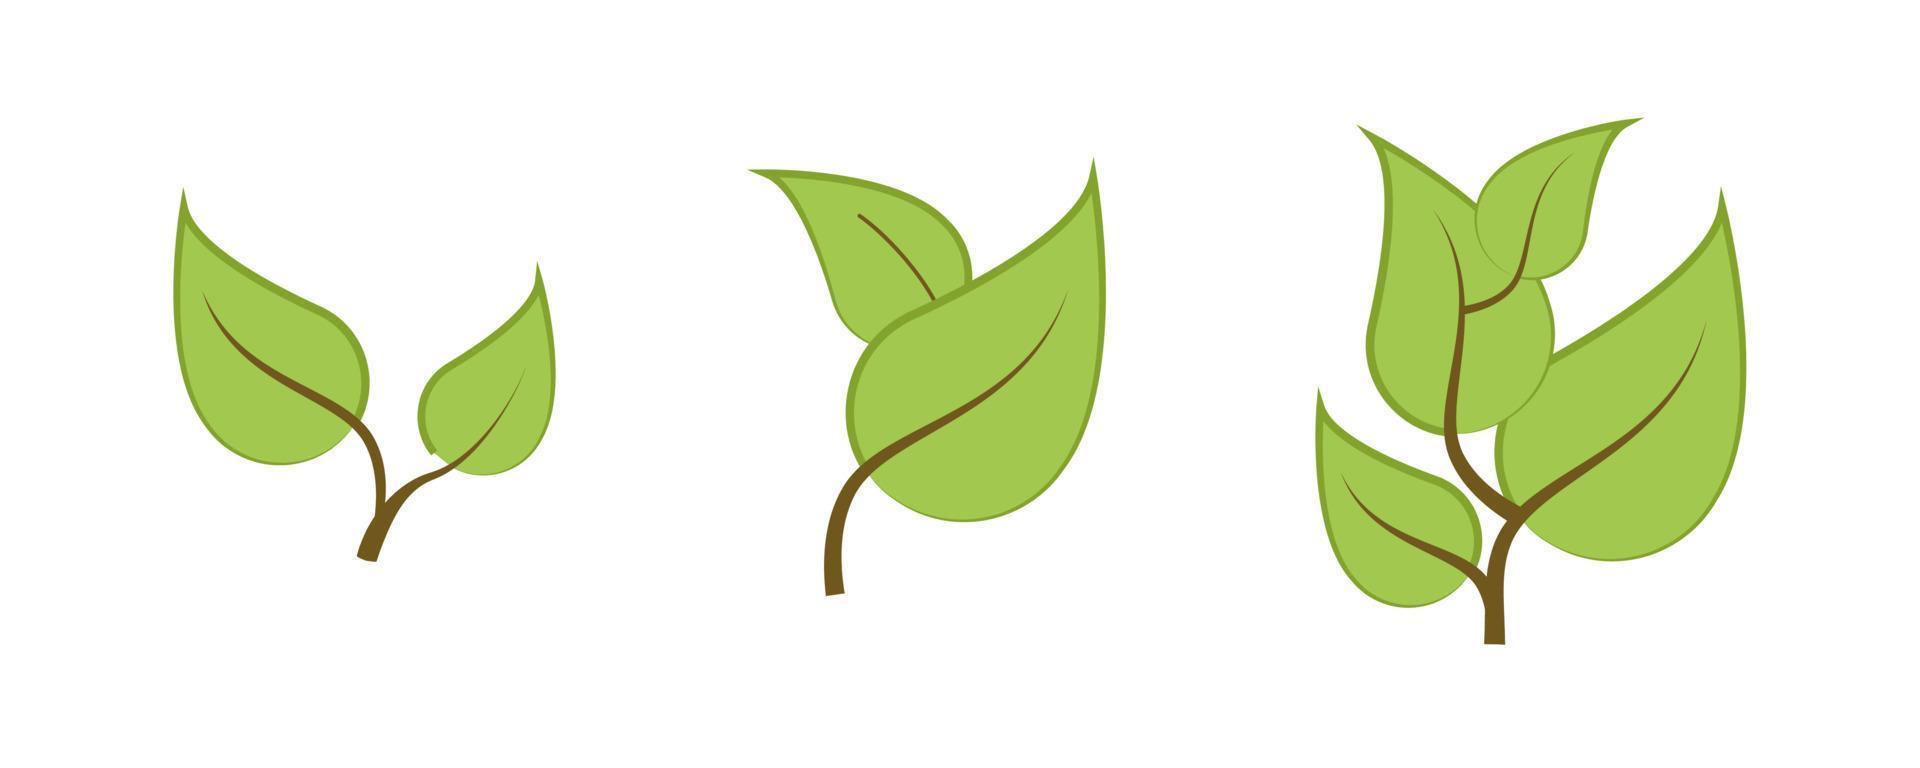 gras, boom en takken vector icon set. bevat symbolen als plant, blad. bewerkbare streek. kleurrijke pictogramserie.